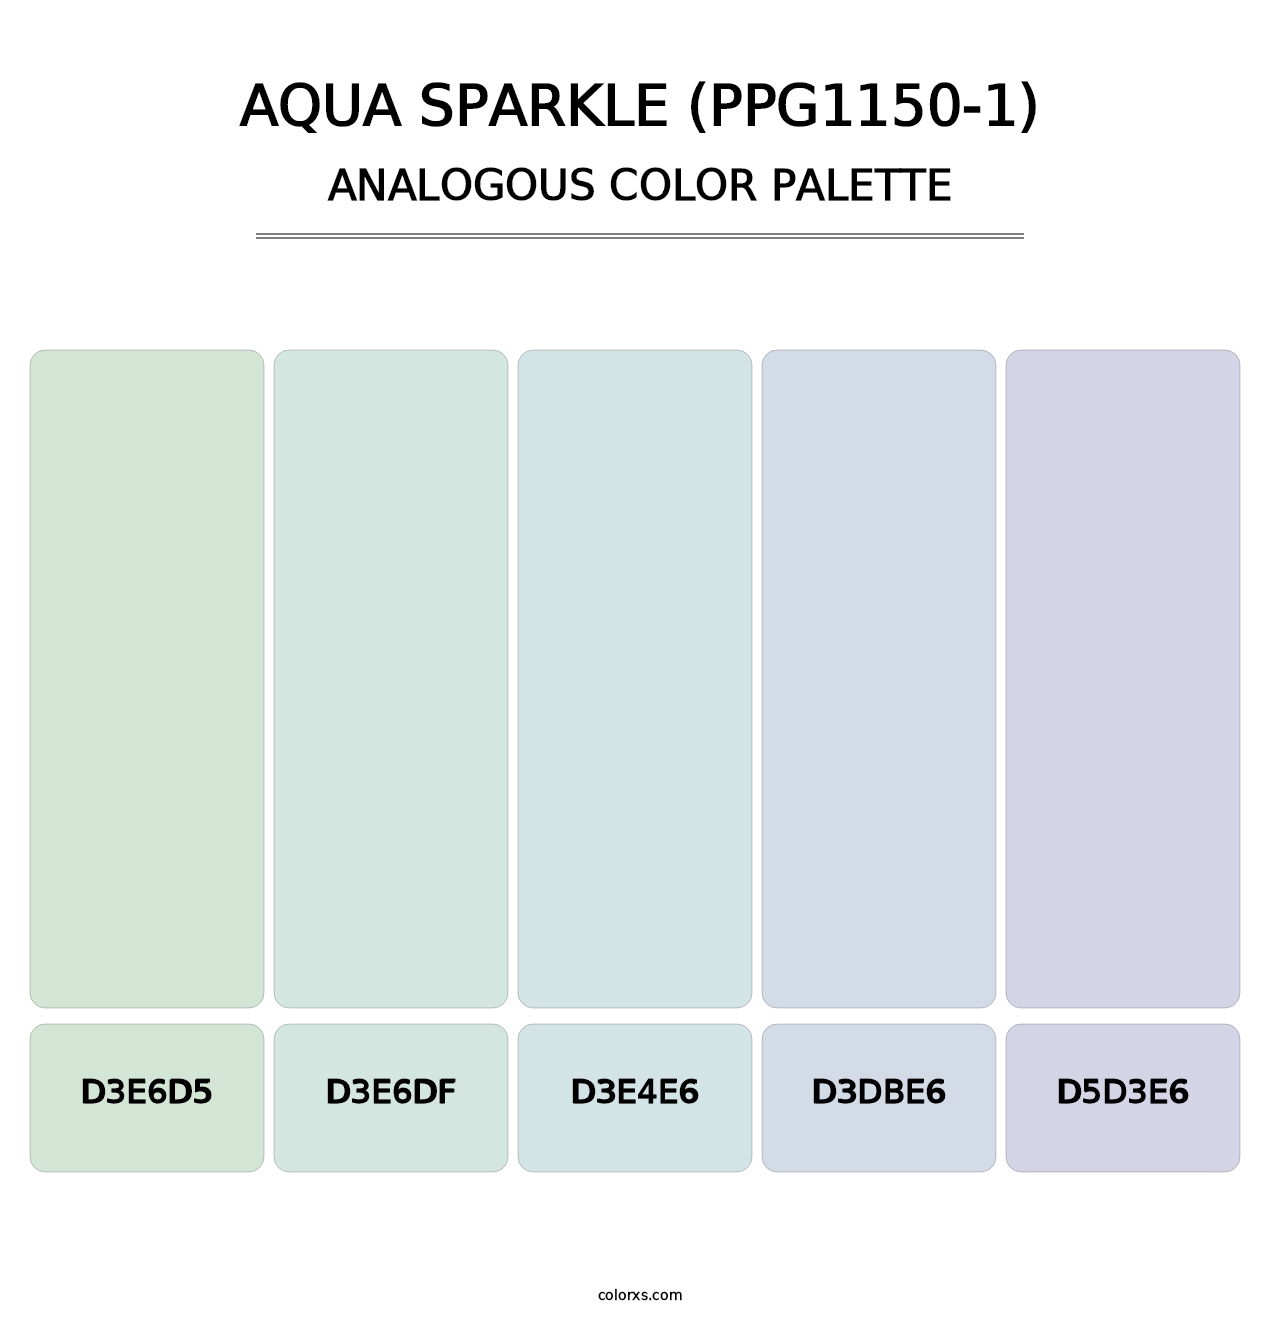 Aqua Sparkle (PPG1150-1) - Analogous Color Palette